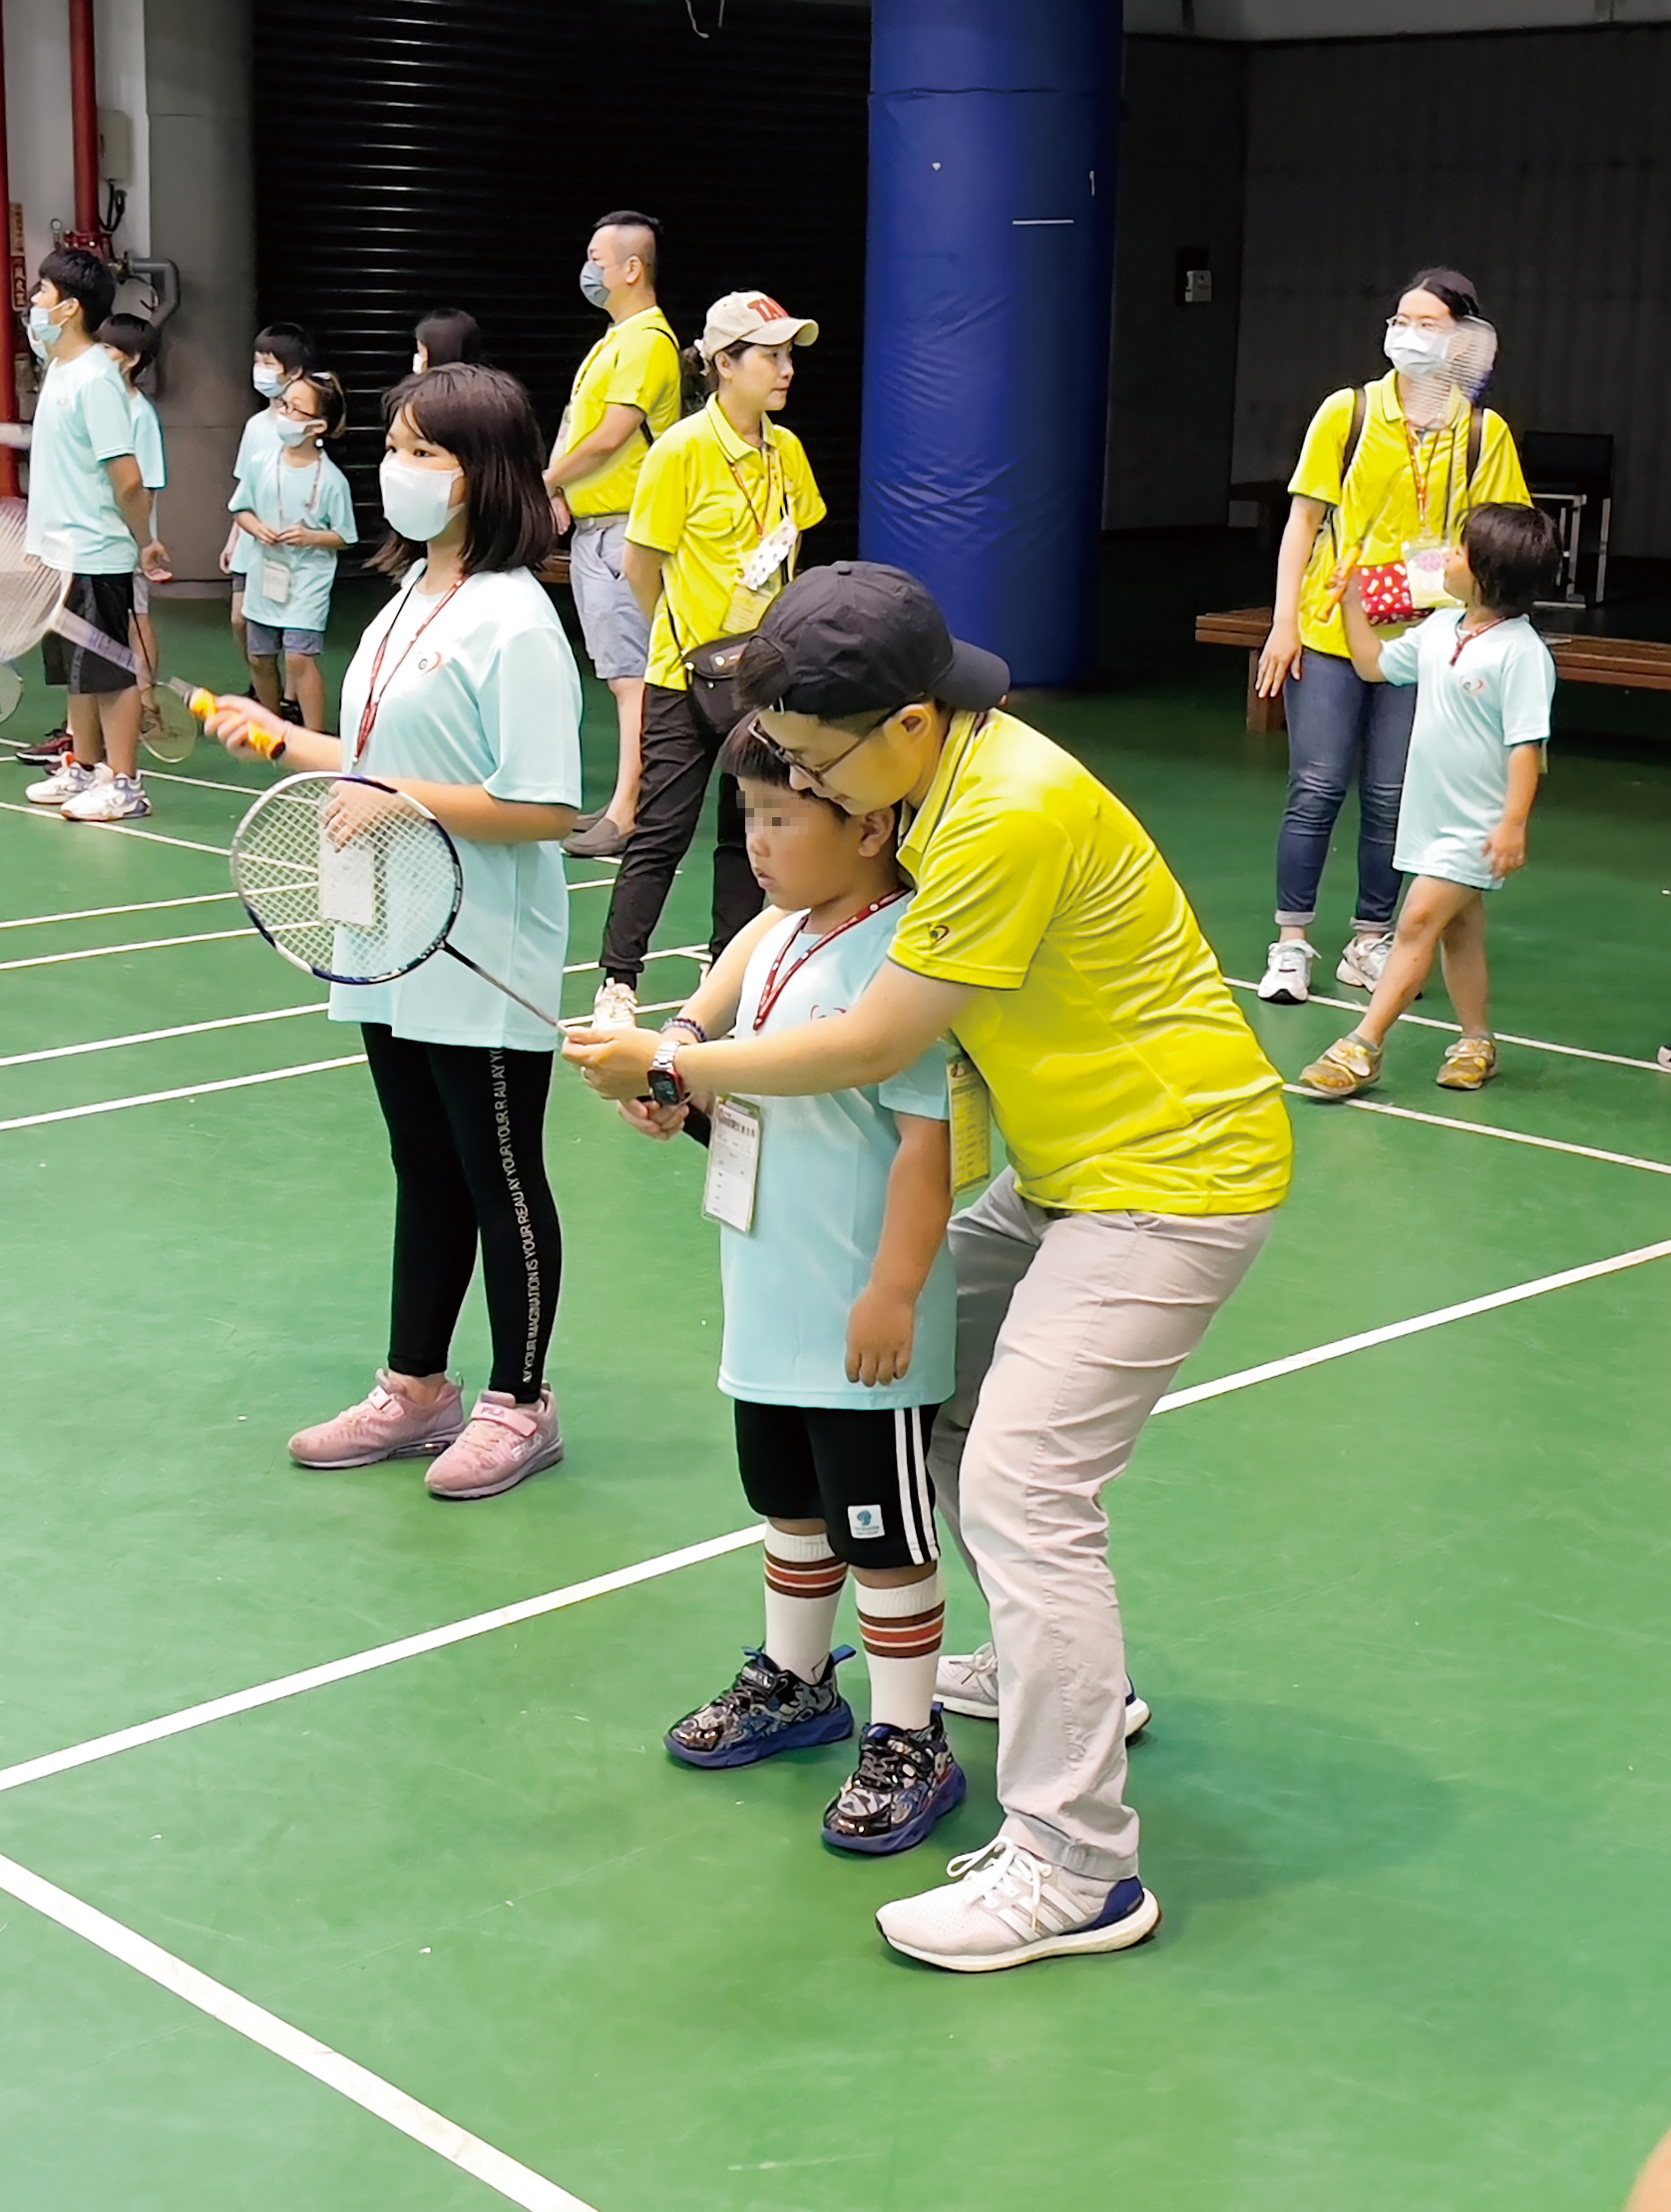 志工用愛心和耐心陪伴寶貝練習羽球。